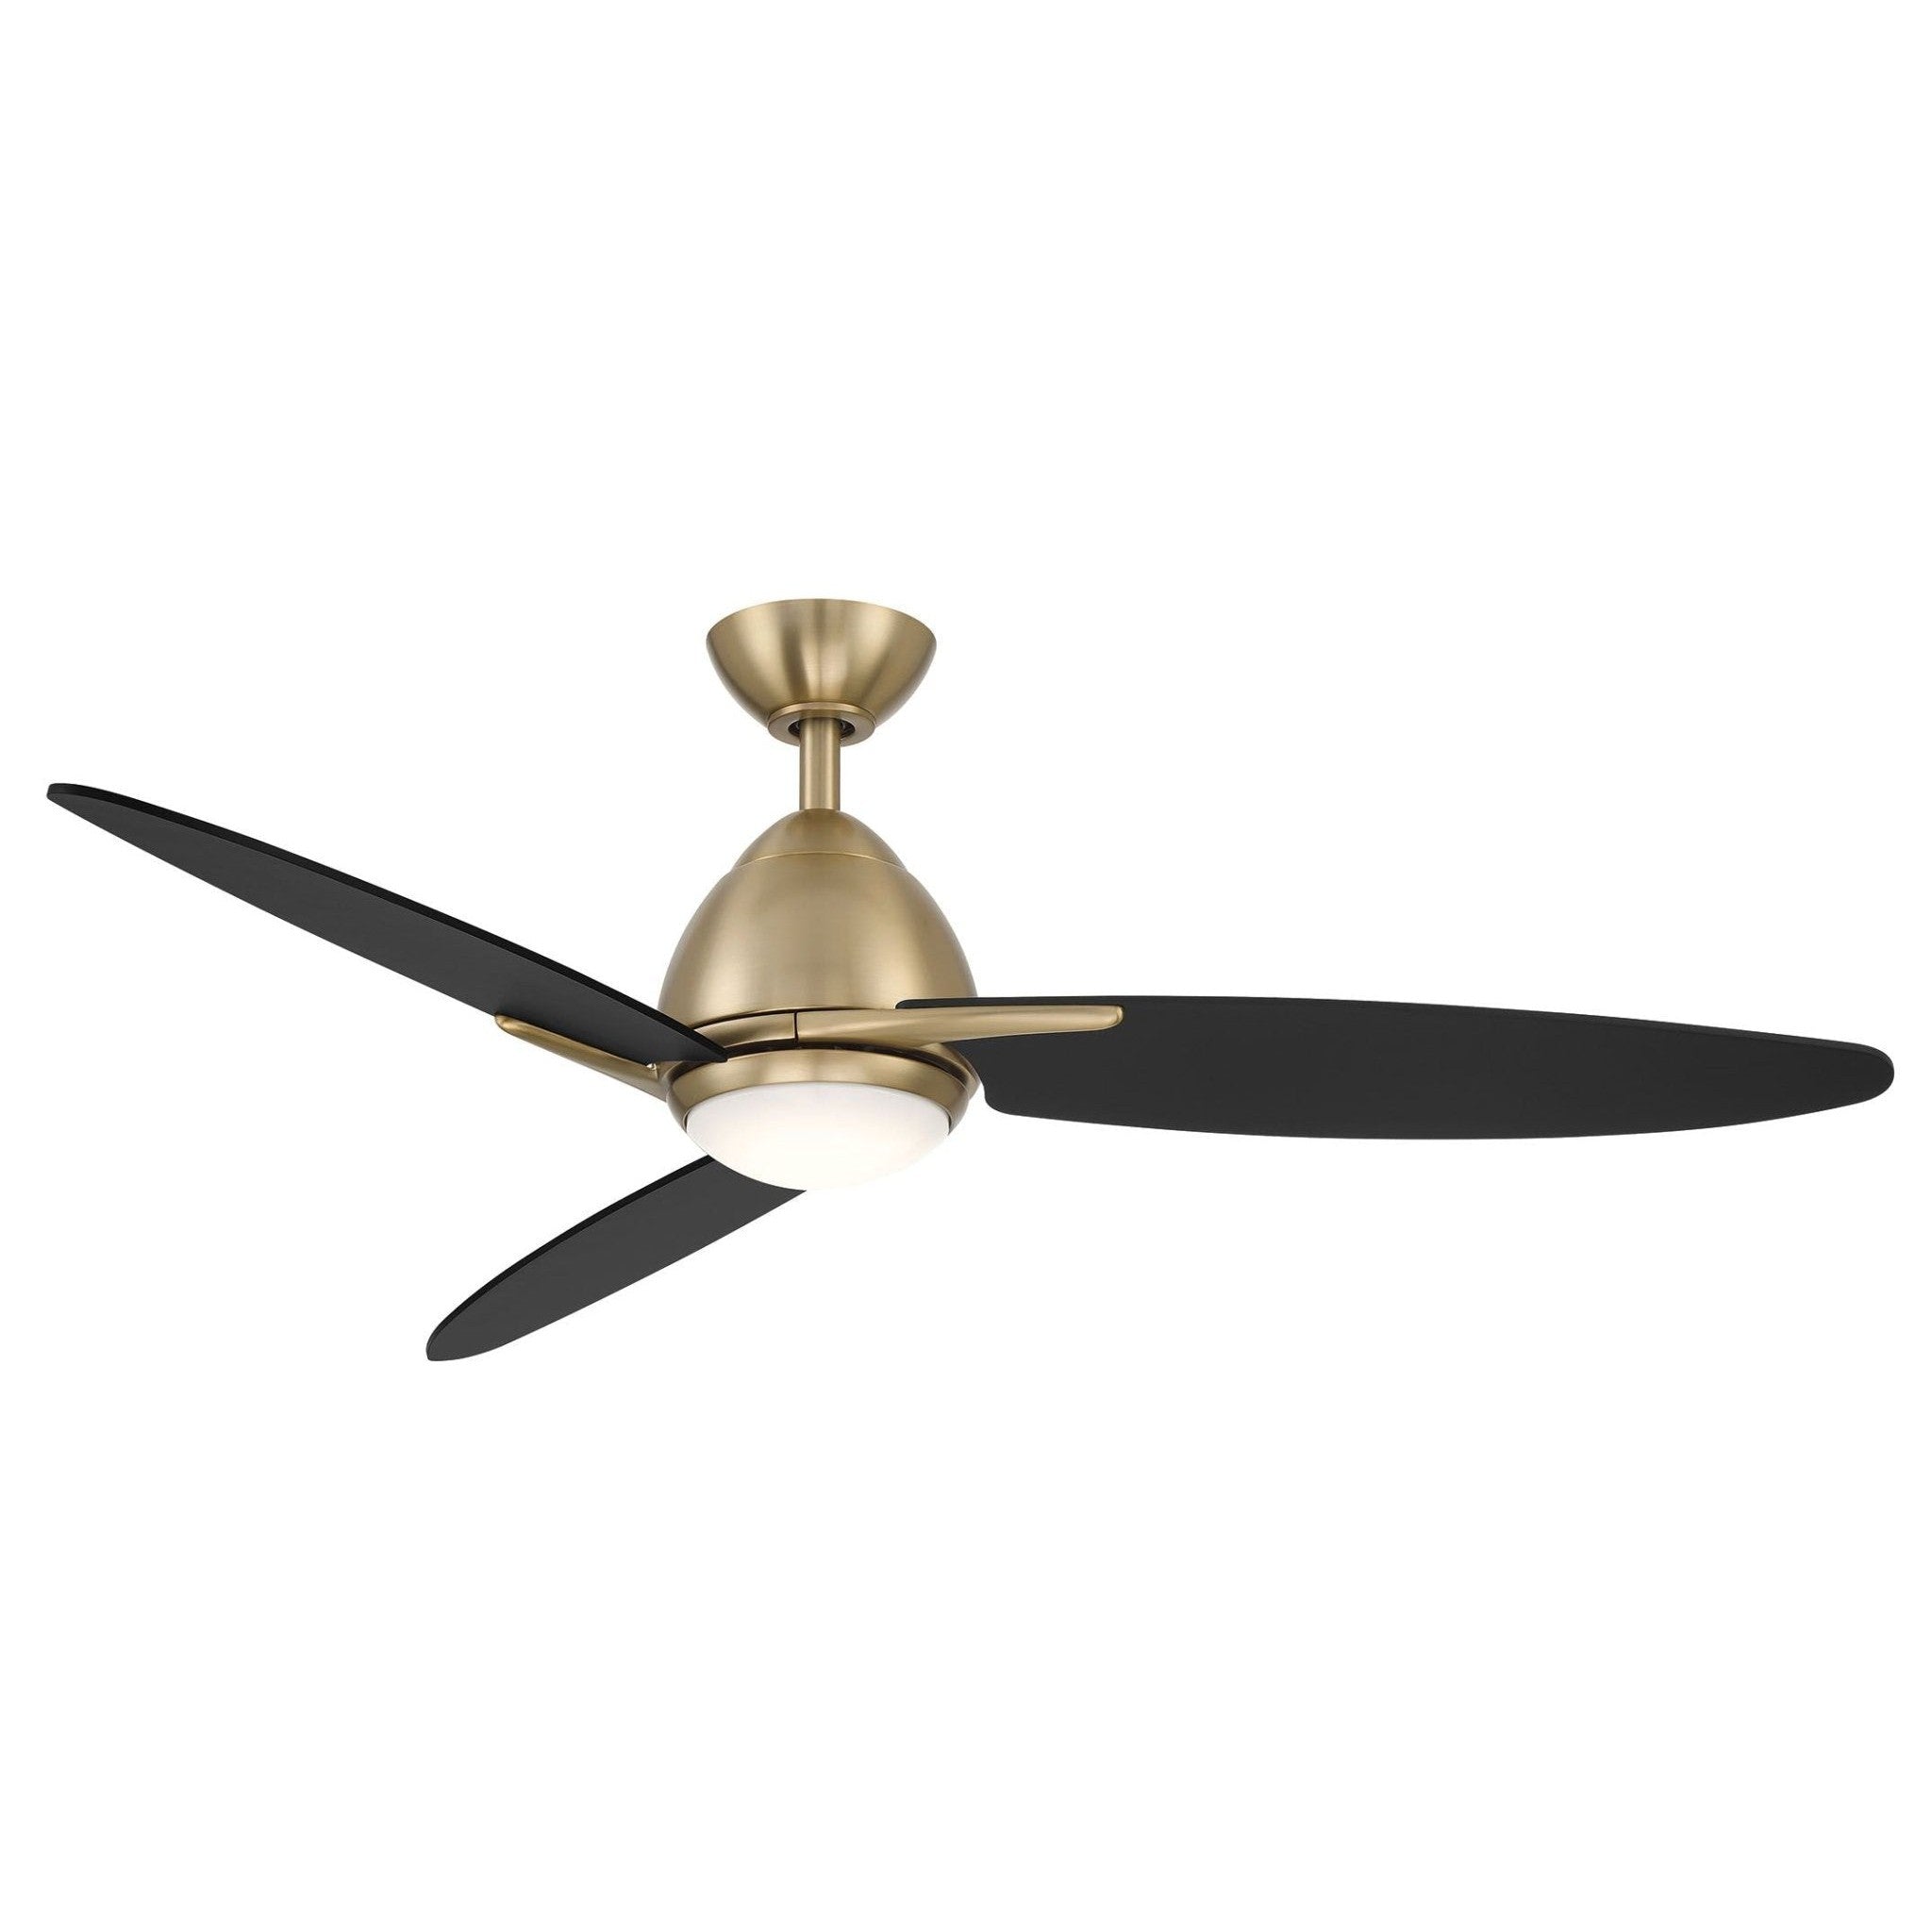 Wind River Atlas 52" LED Ceiling Fan